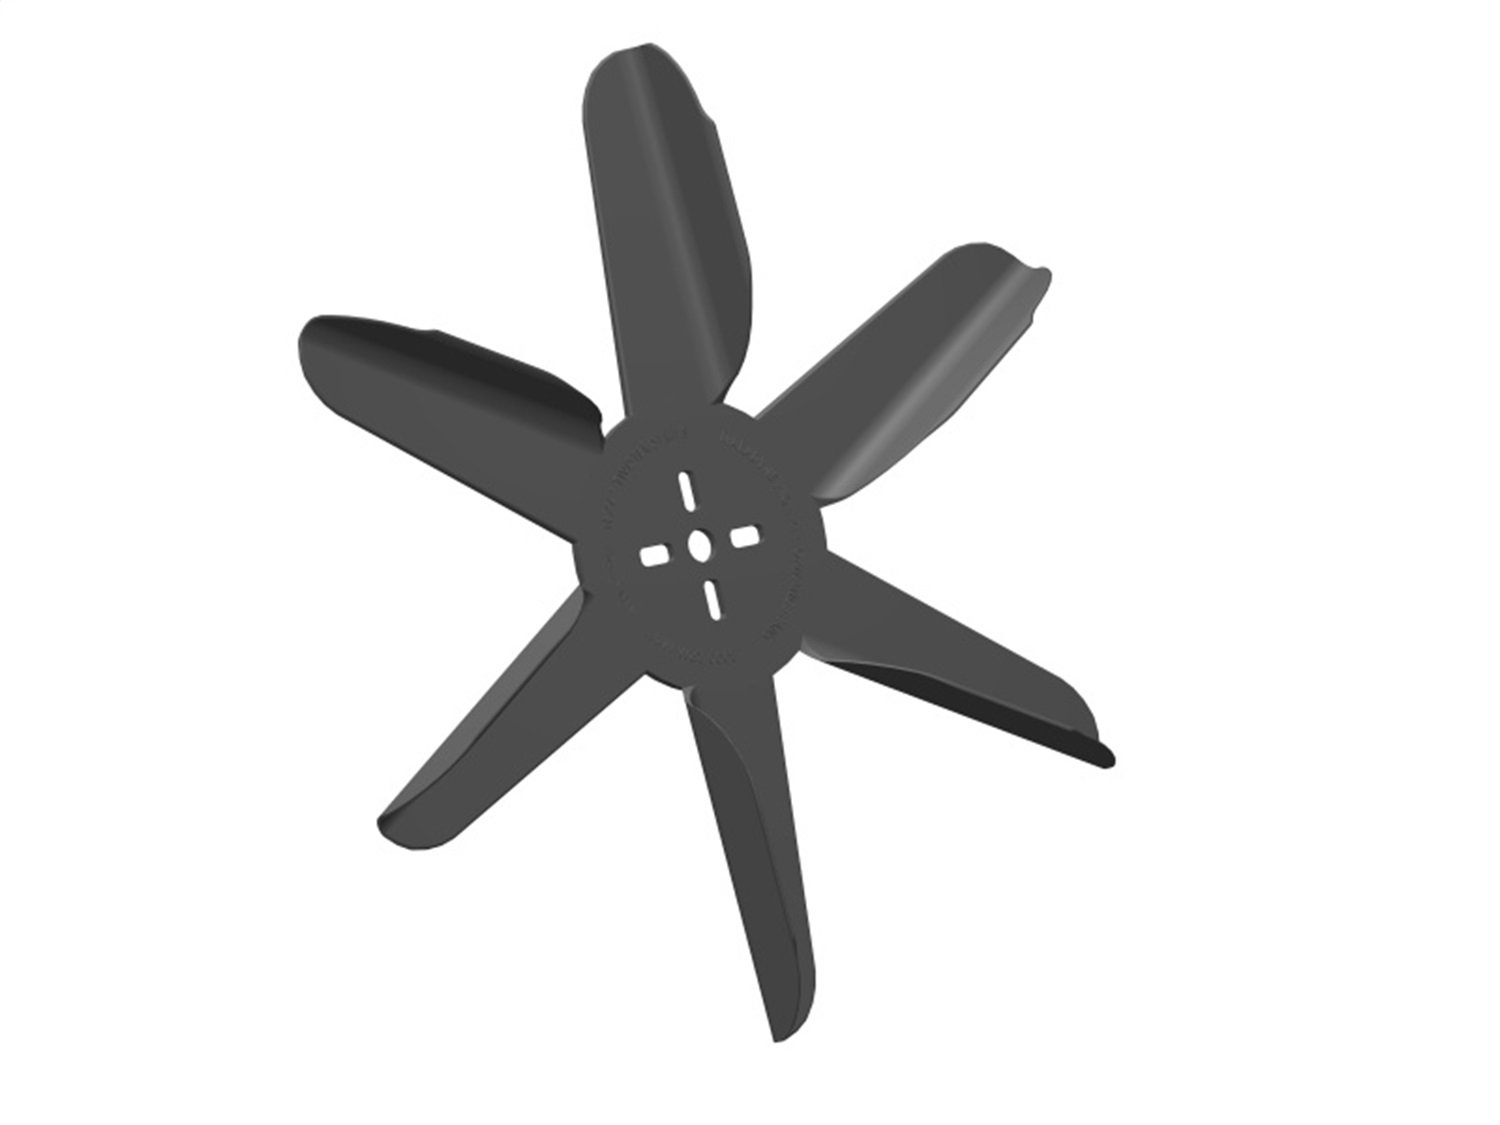 Texas Twister Engine-Driven Flex Fan Blade, Diameter: 15 in.